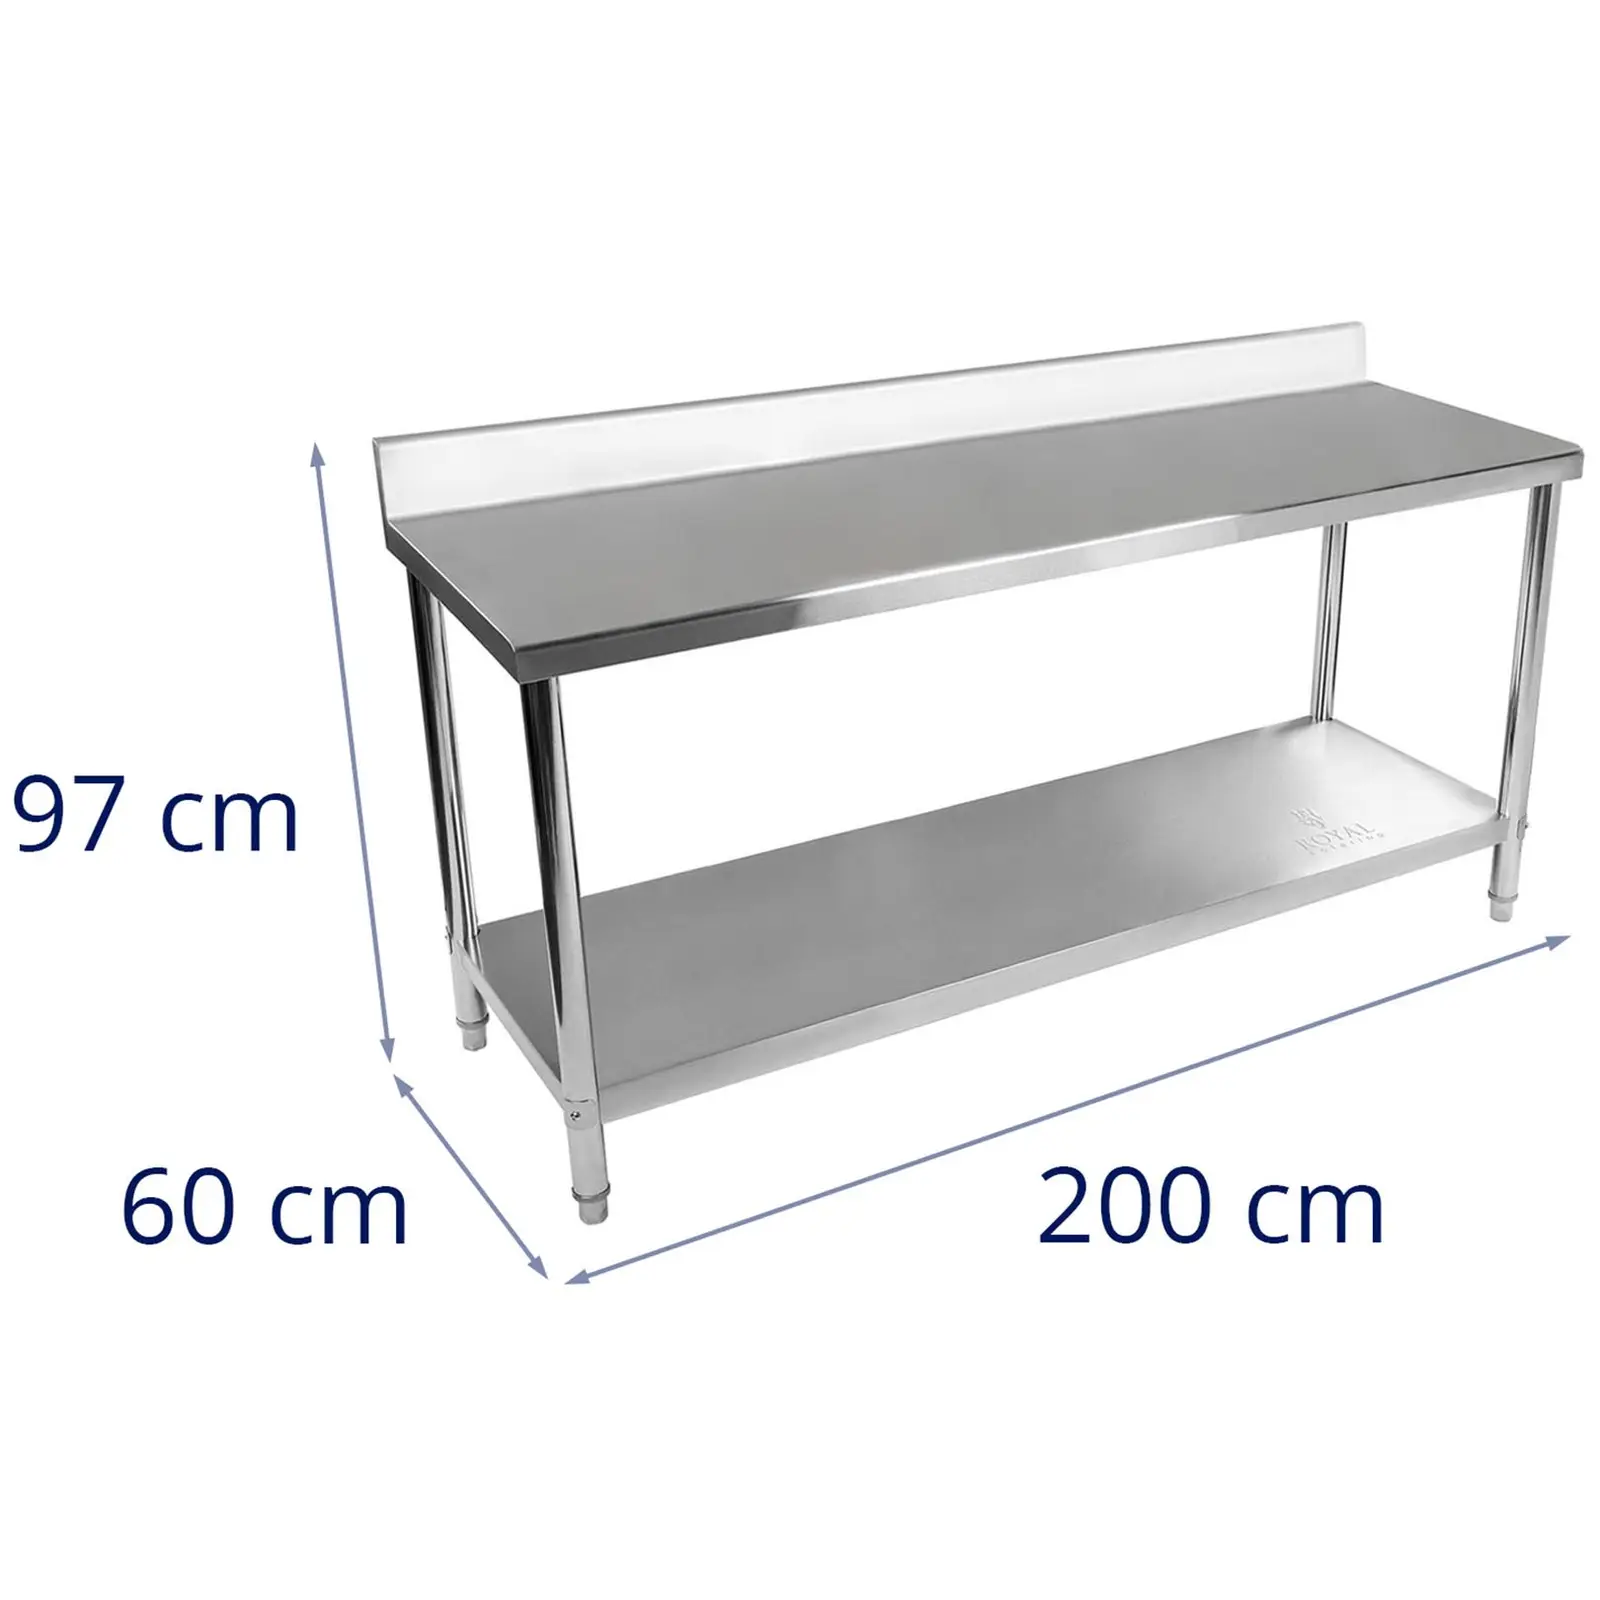 Table de travail inox - 200 x 60 cm - Avec dosseret - Capacité de charge de 195 kg